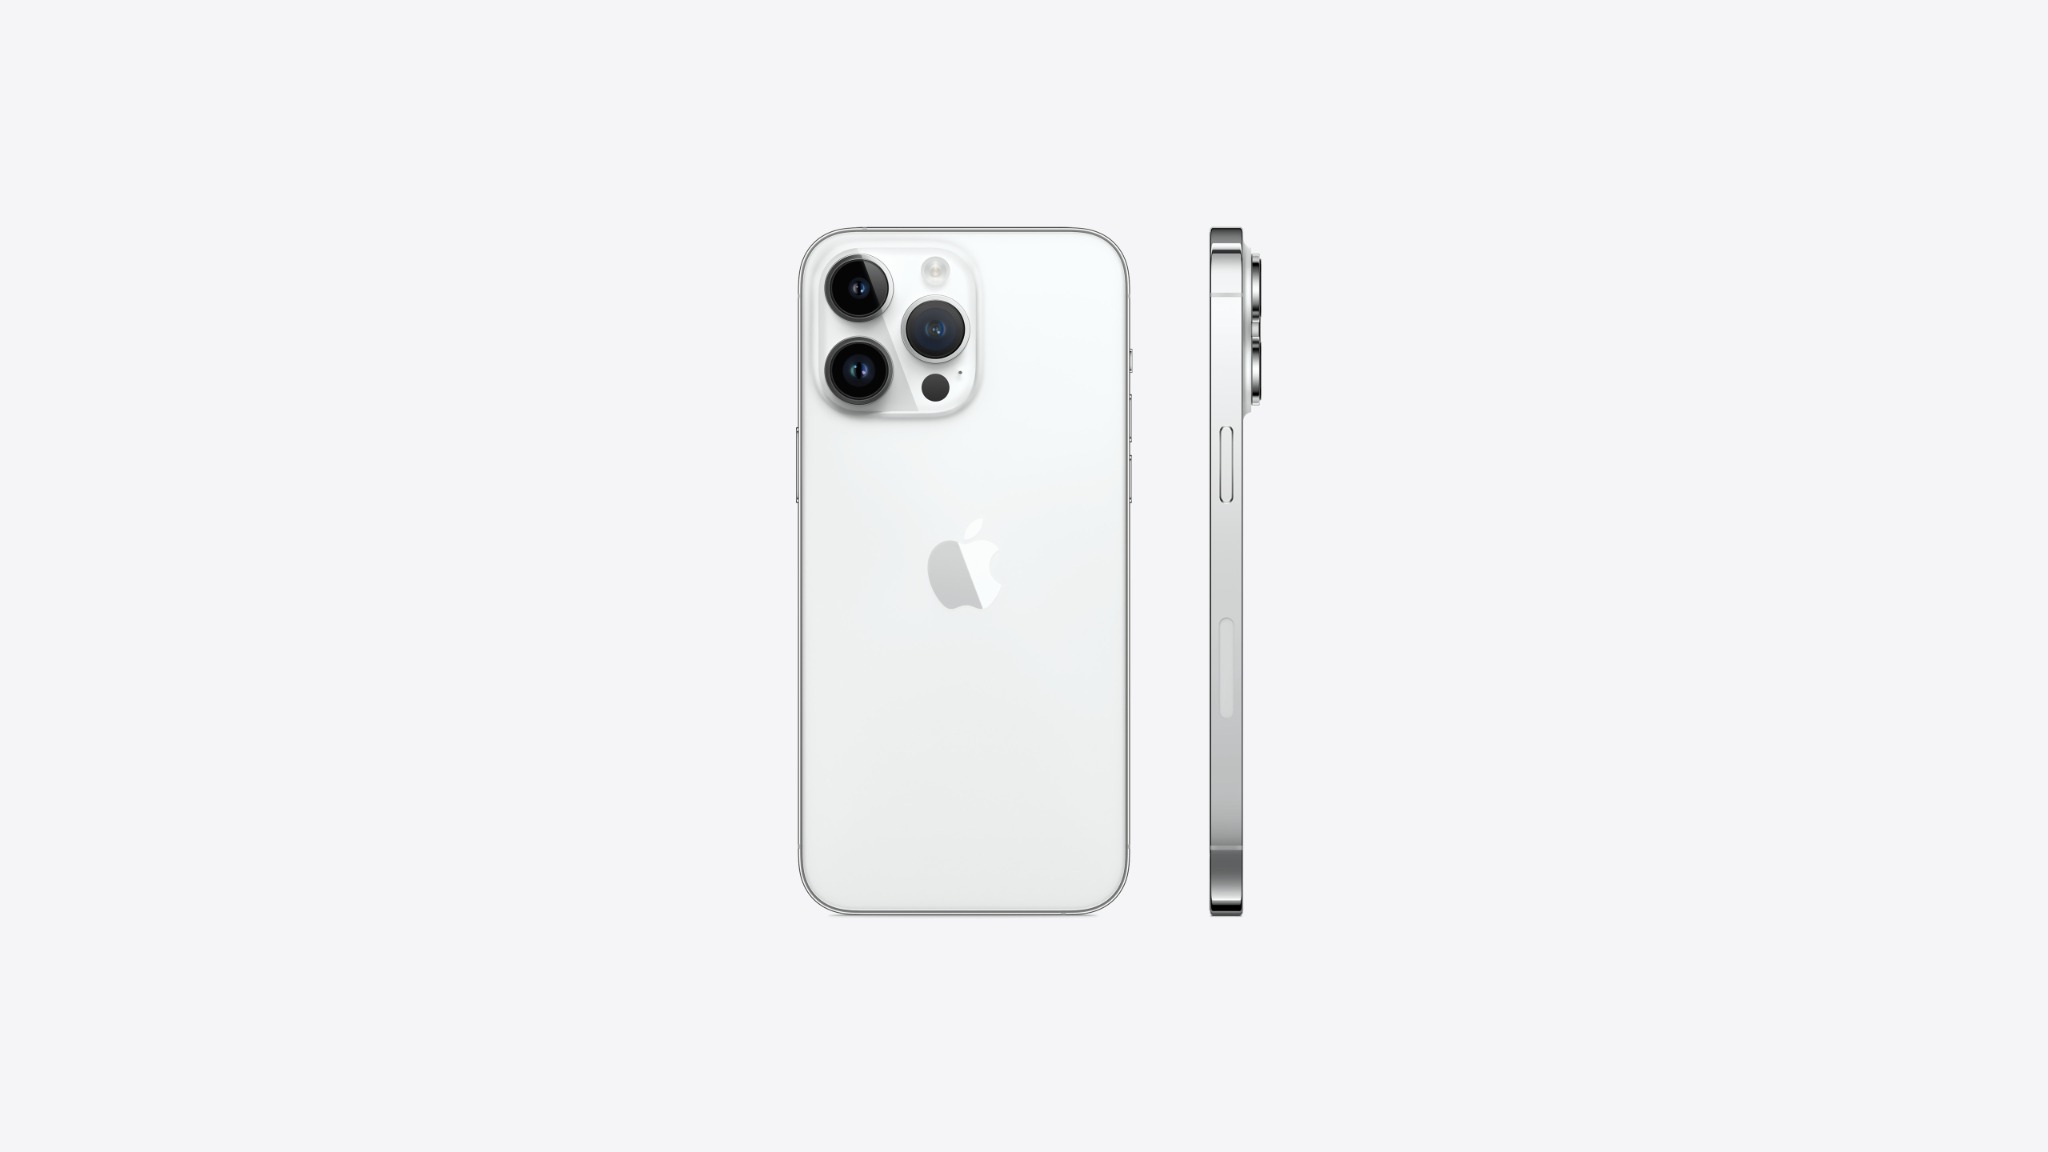 Bạn muốn sở hữu chiếc iPhone mới nhất của Apple? Hãy tìm đến NMS, đại lý ủy quyền chính thức của Apple và nhận ngay iPhone 14 Pro Max đầy ấn tượng! Màn hình lớn, camera chất lượng cao, một thiết bị tuyệt vời để giúp bạn kết nối và làm việc hiệu quả hơn. Đừng bỏ lỡ cơ hội này!